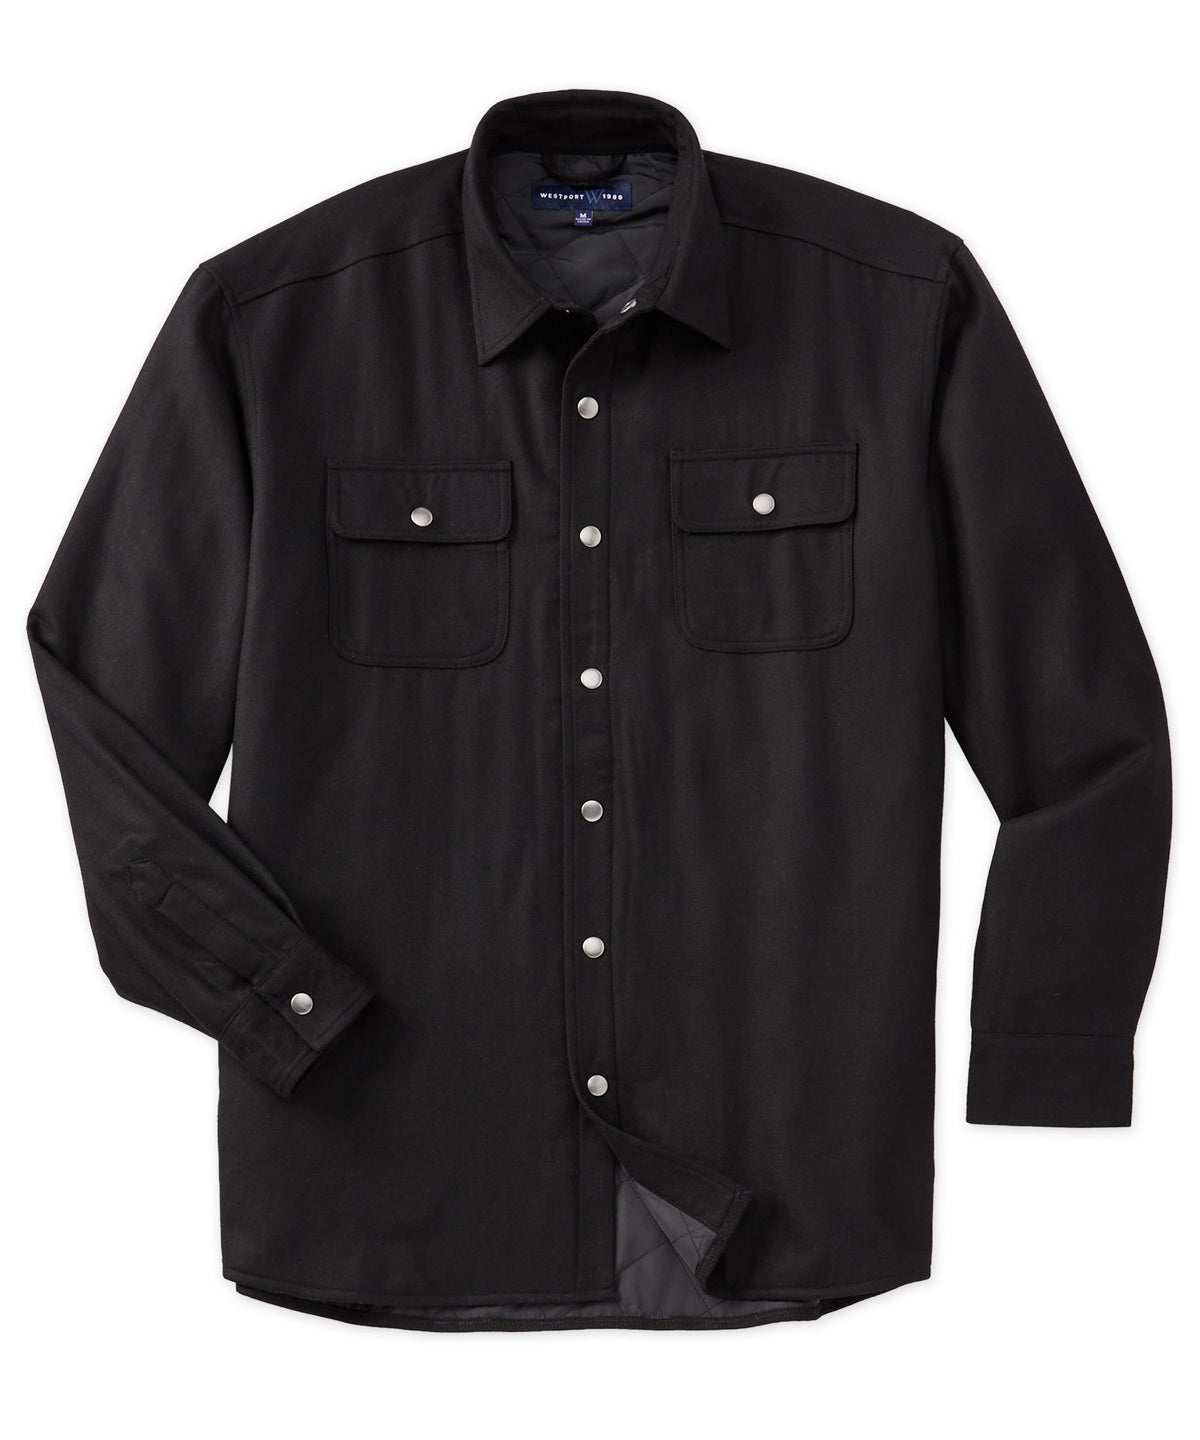 Westport Lifestyle Firepit Flannel Solid Shirt Jacket